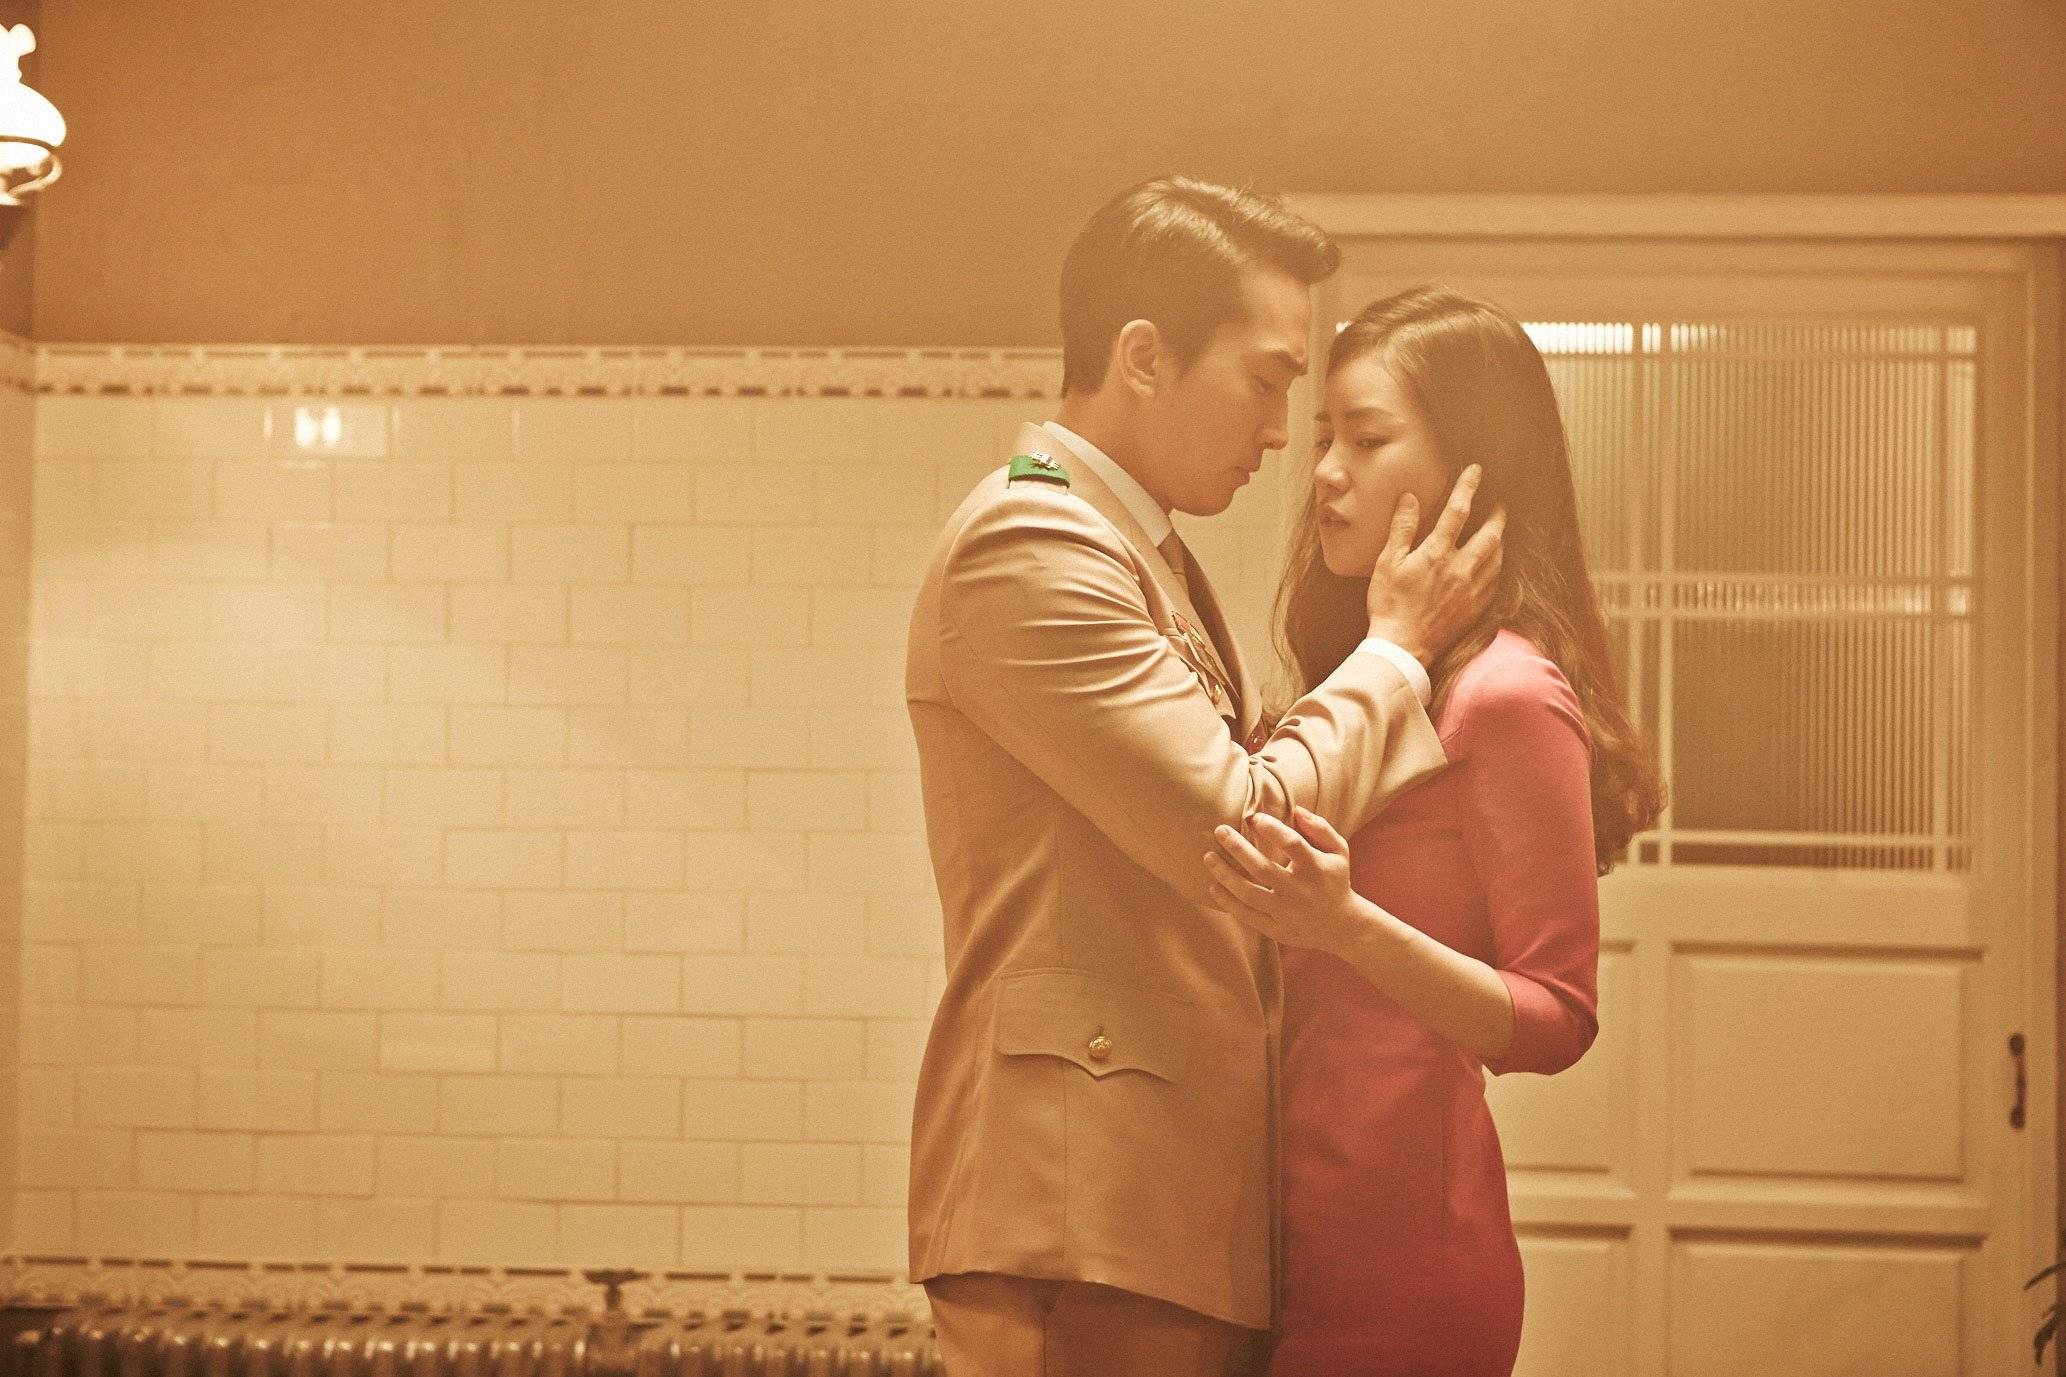 Sinopsis Film Korea Obsessed Tahun 2014 Kisah Perselingkuhan Dibalut Genre Dewasa Beserta Fakta 